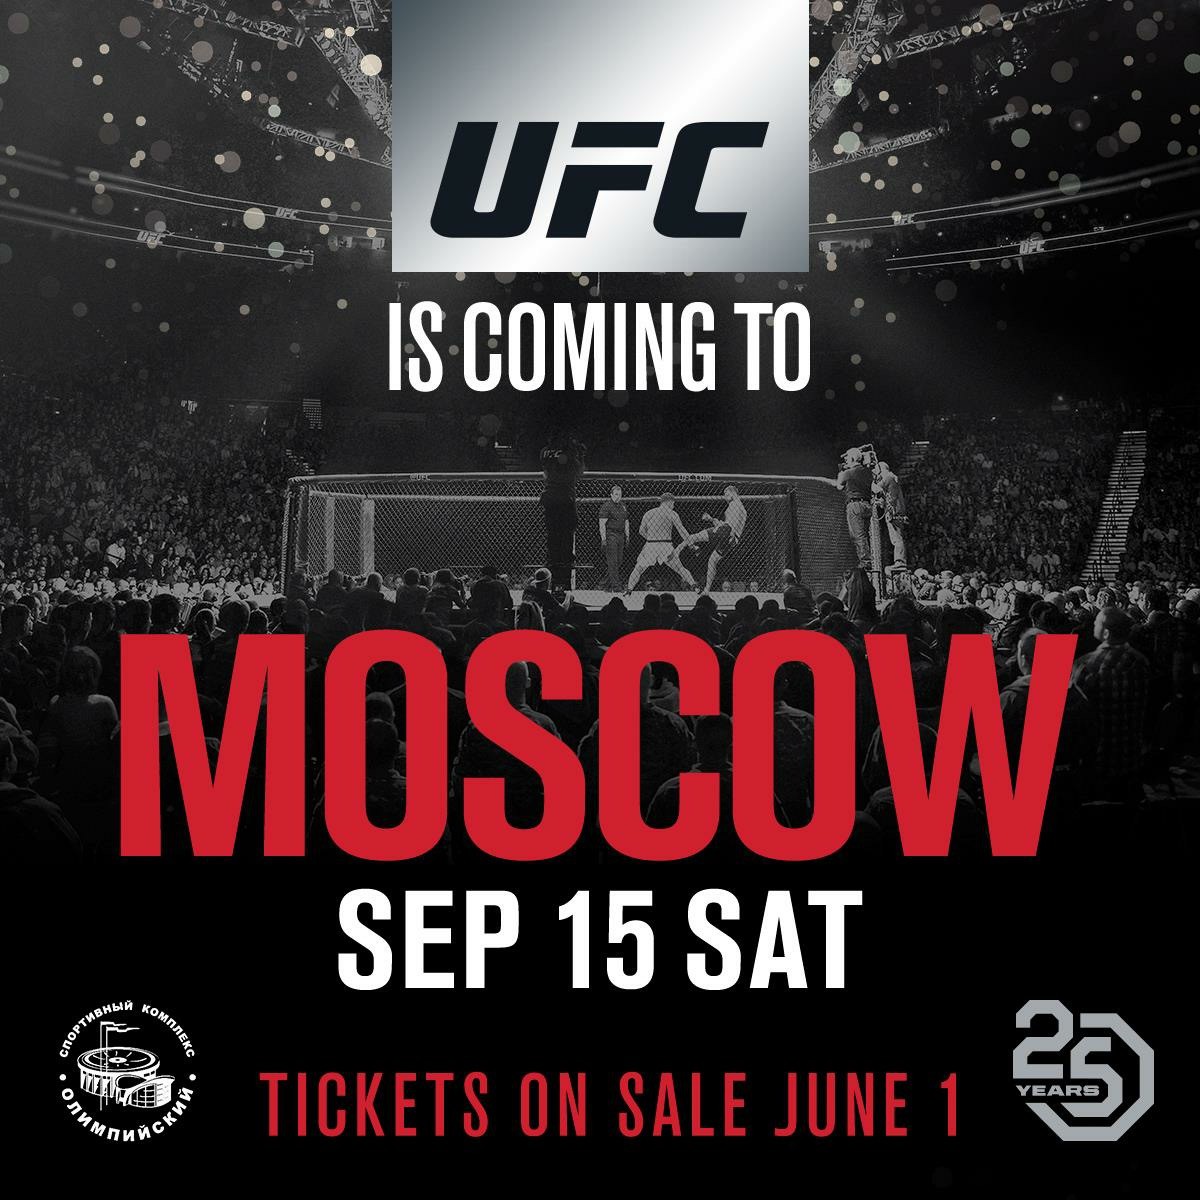 UFC công bố toàn bộ lịch sự kiện cho đến cuối năm 2018 - Ảnh 2.